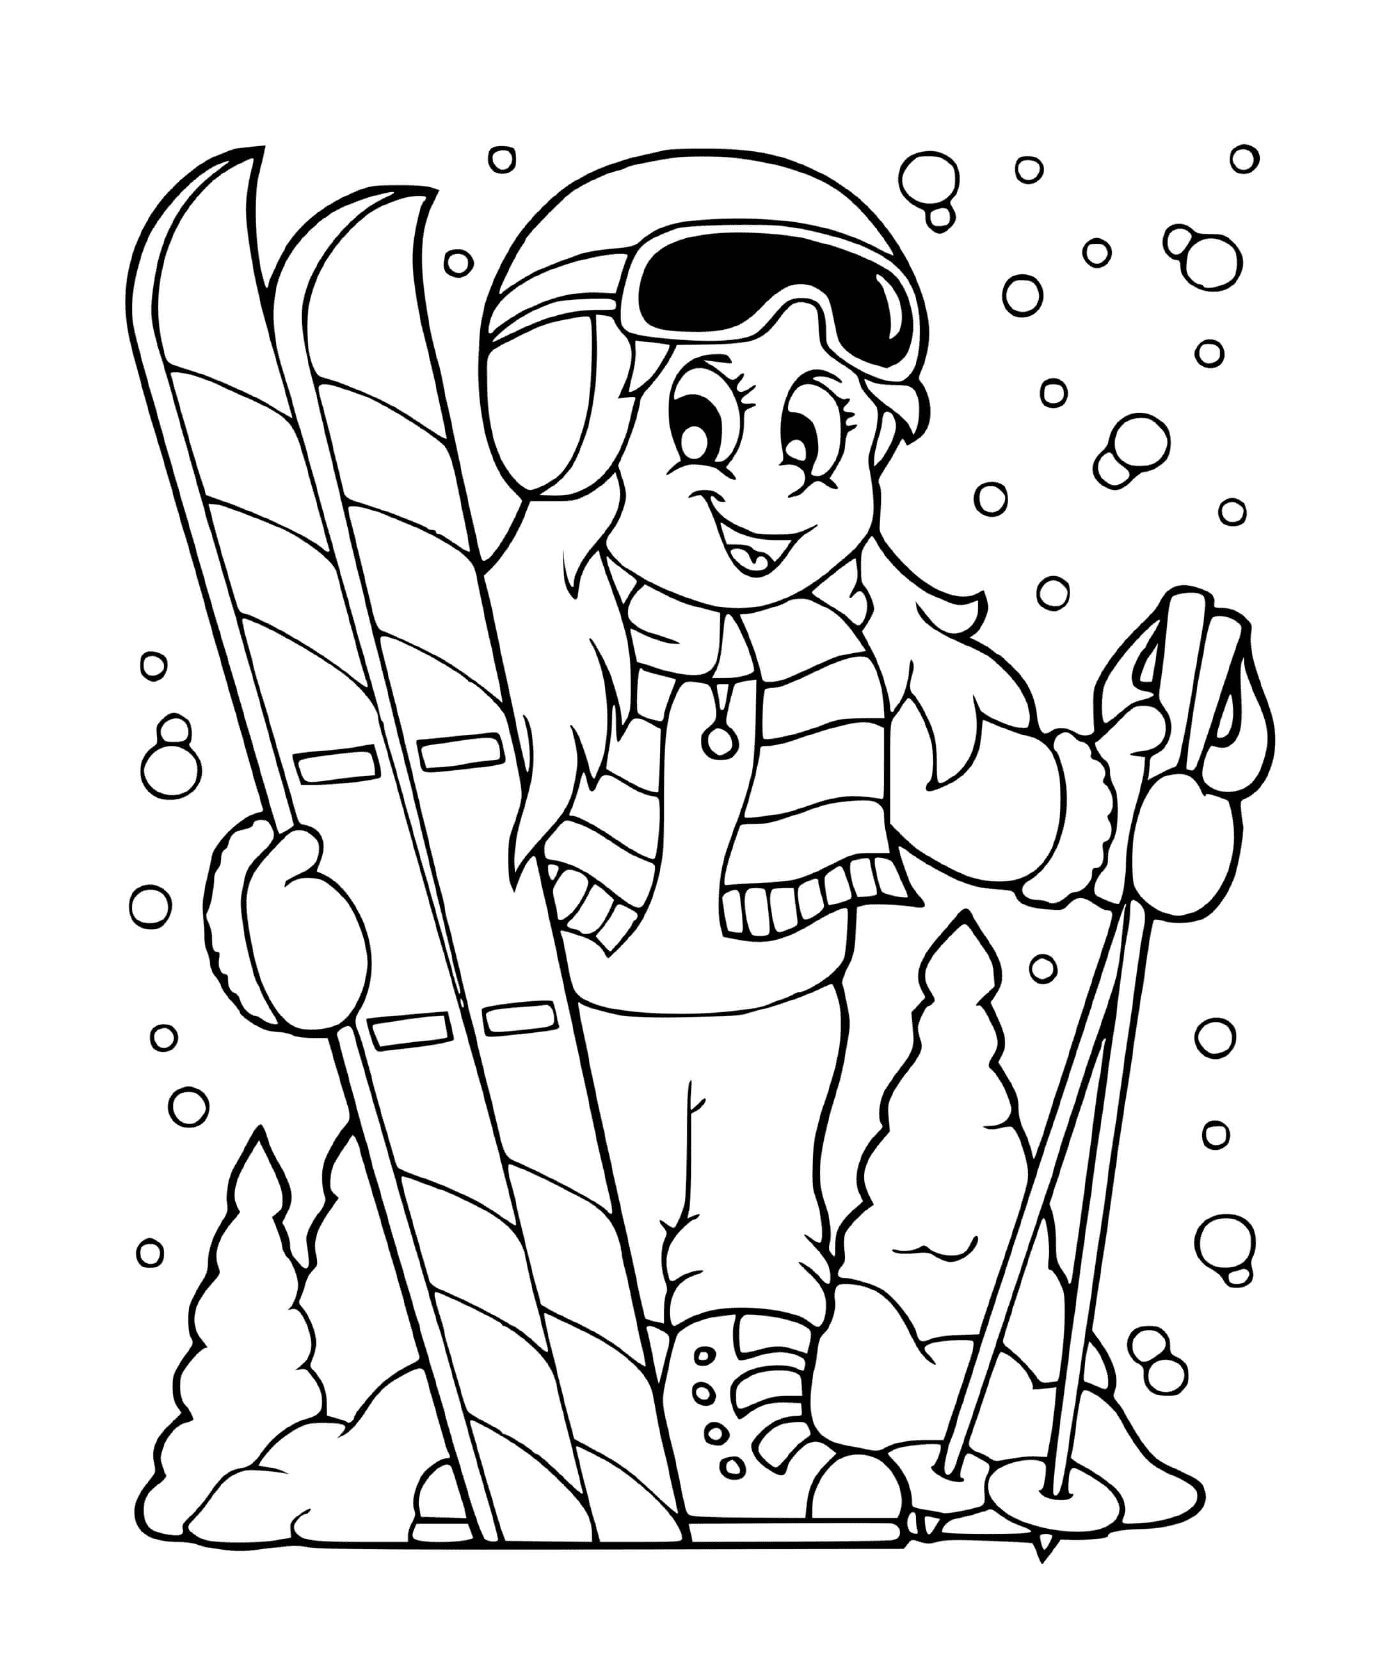  女孩在冬季滑雪高山 